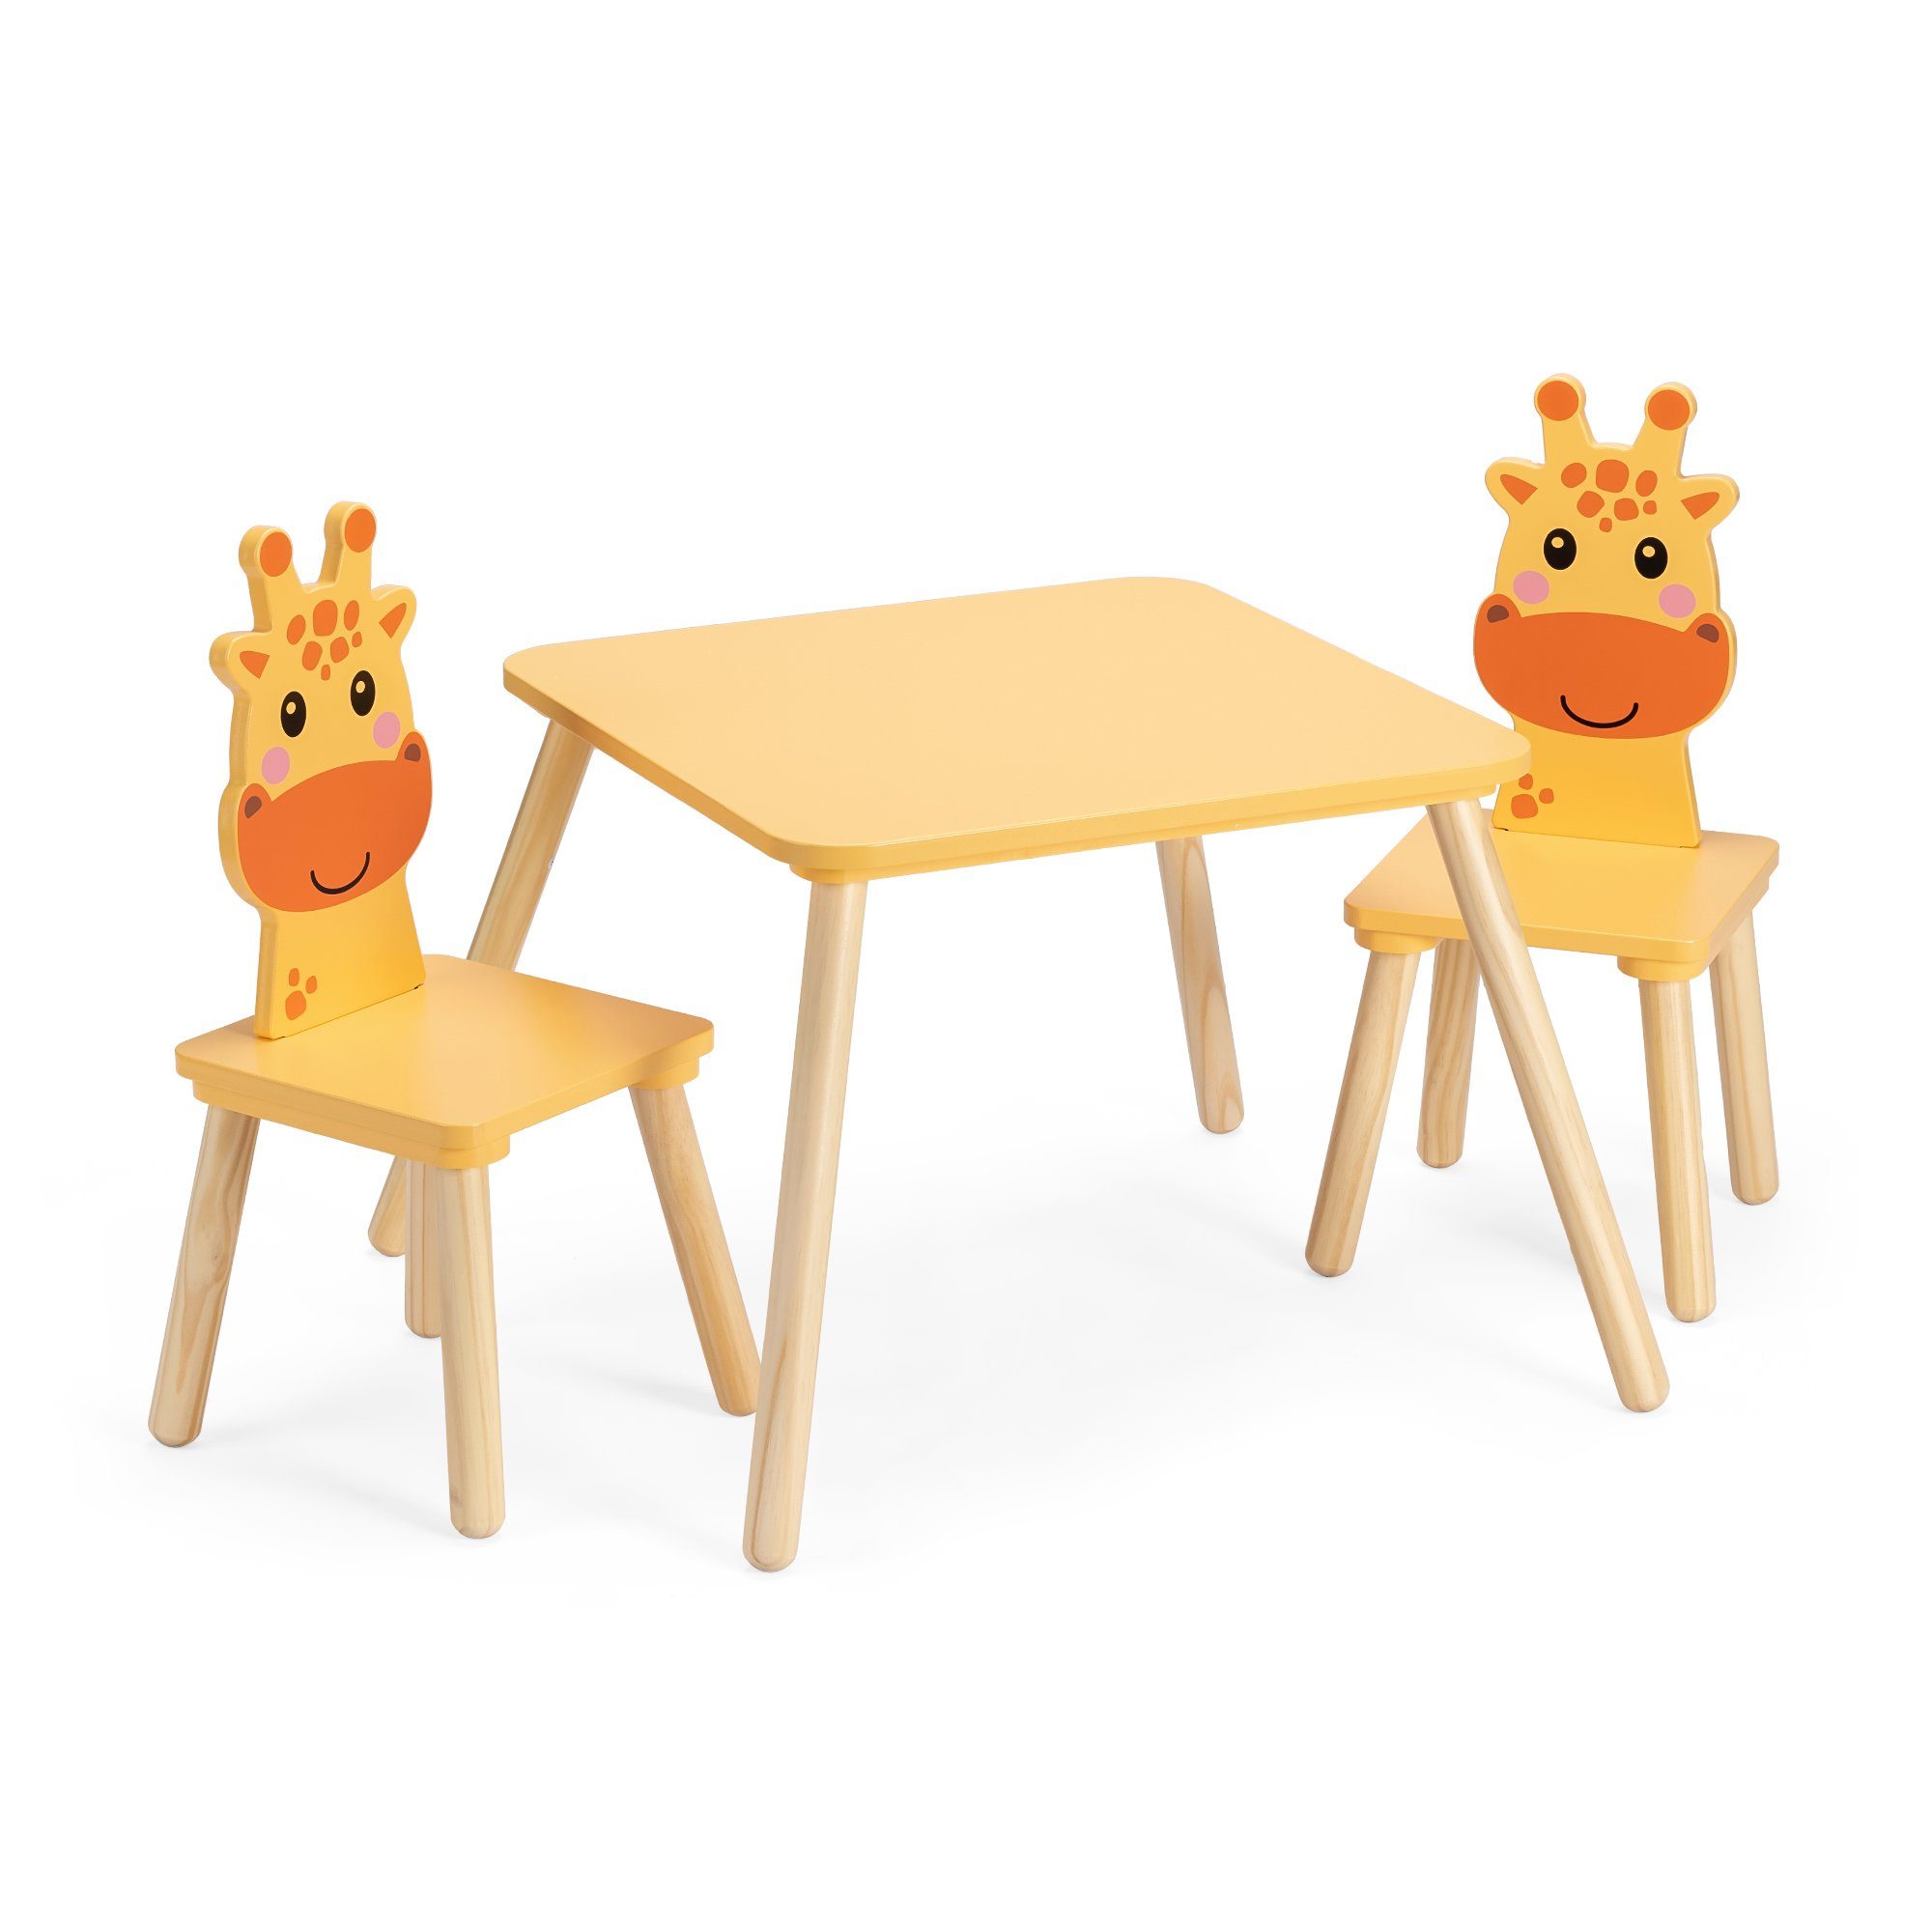 Navaris Design Stühle & Giraffen Tisch - Kindersitzgruppe - Kindertisch 3tlg.